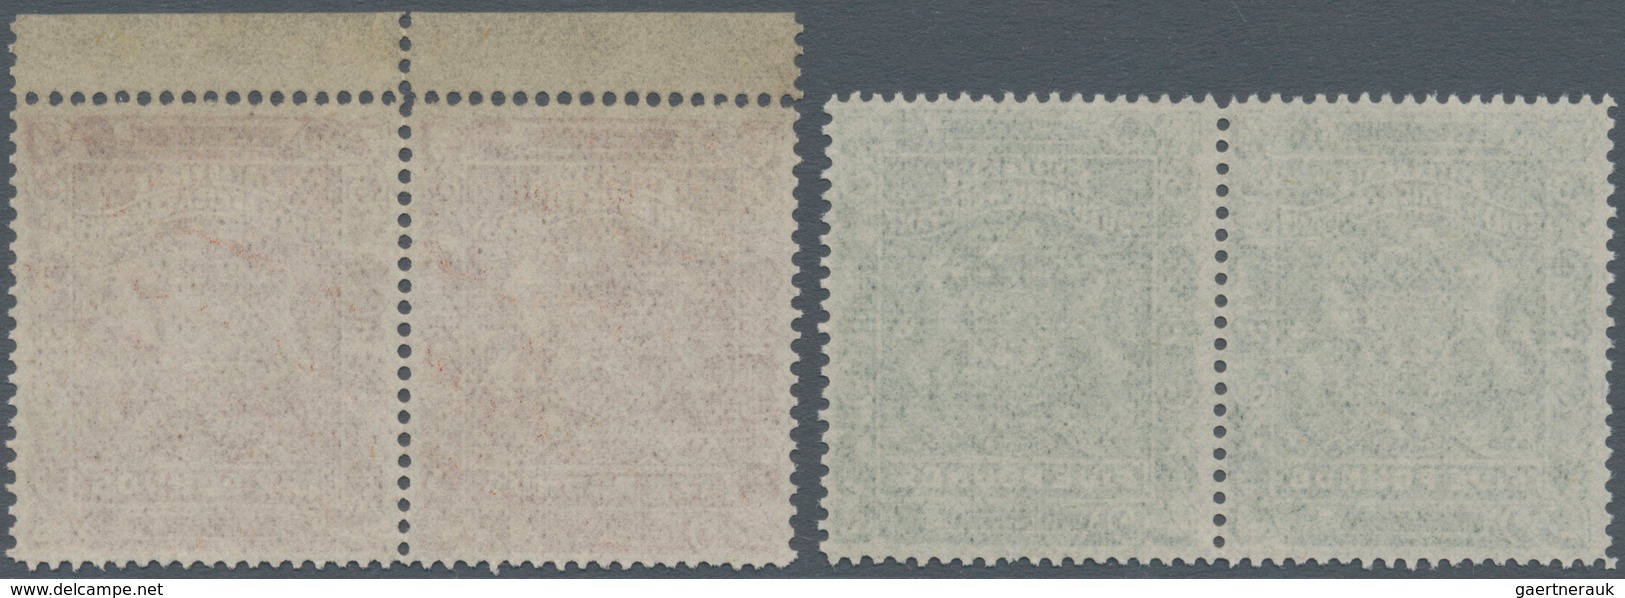 00478 Britische Südafrika-Gesellschaft: 1892, £5 Sage-green And £10 Brown, Each As Horiz.pair, Unused No G - Ohne Zuordnung